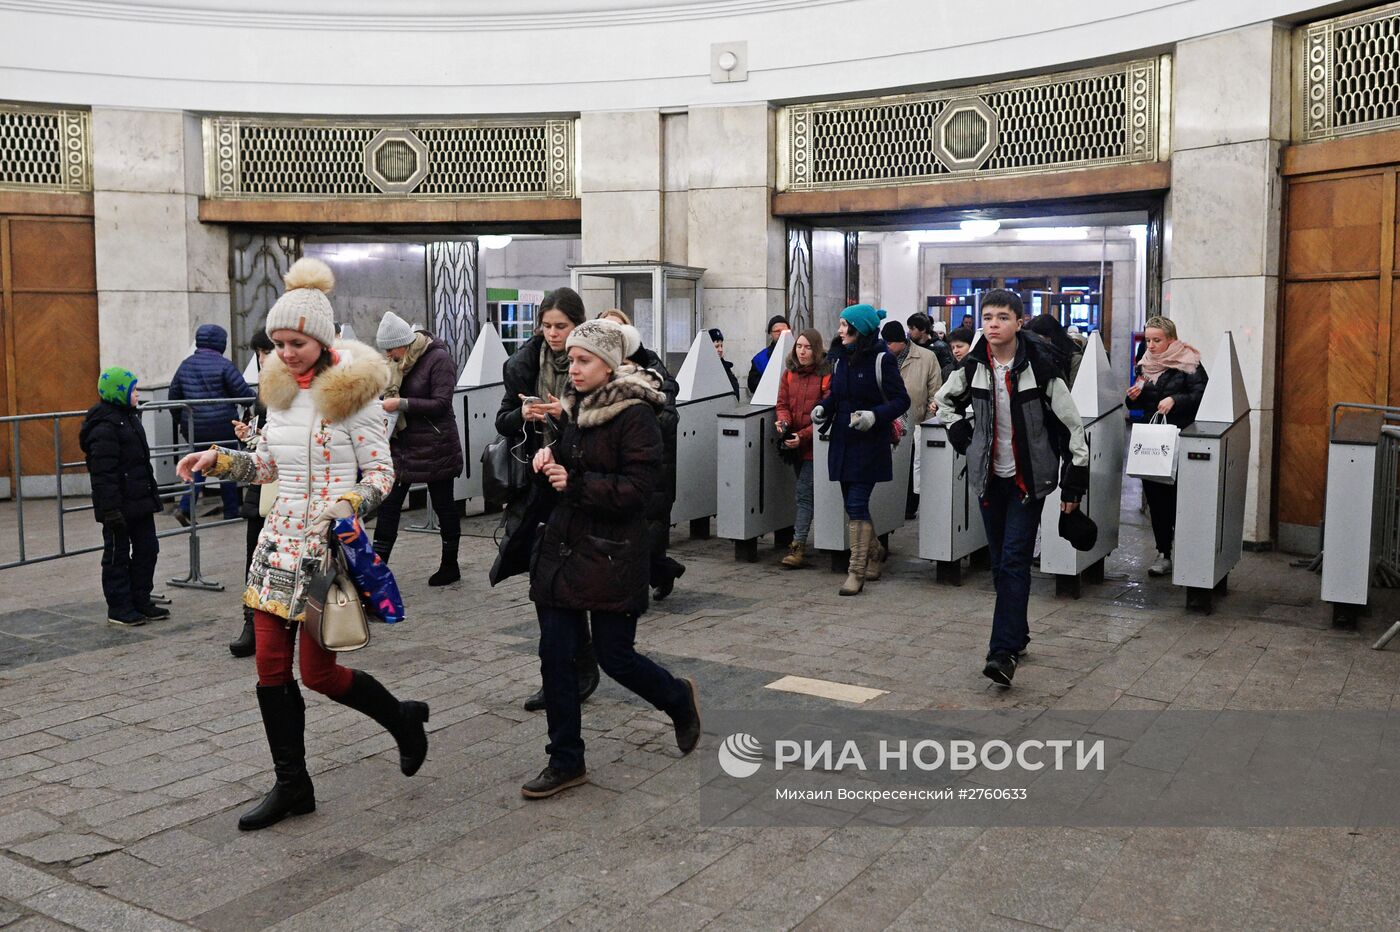 Станция метро "Фрунзенская" закрывается на реконструкцию 2 января